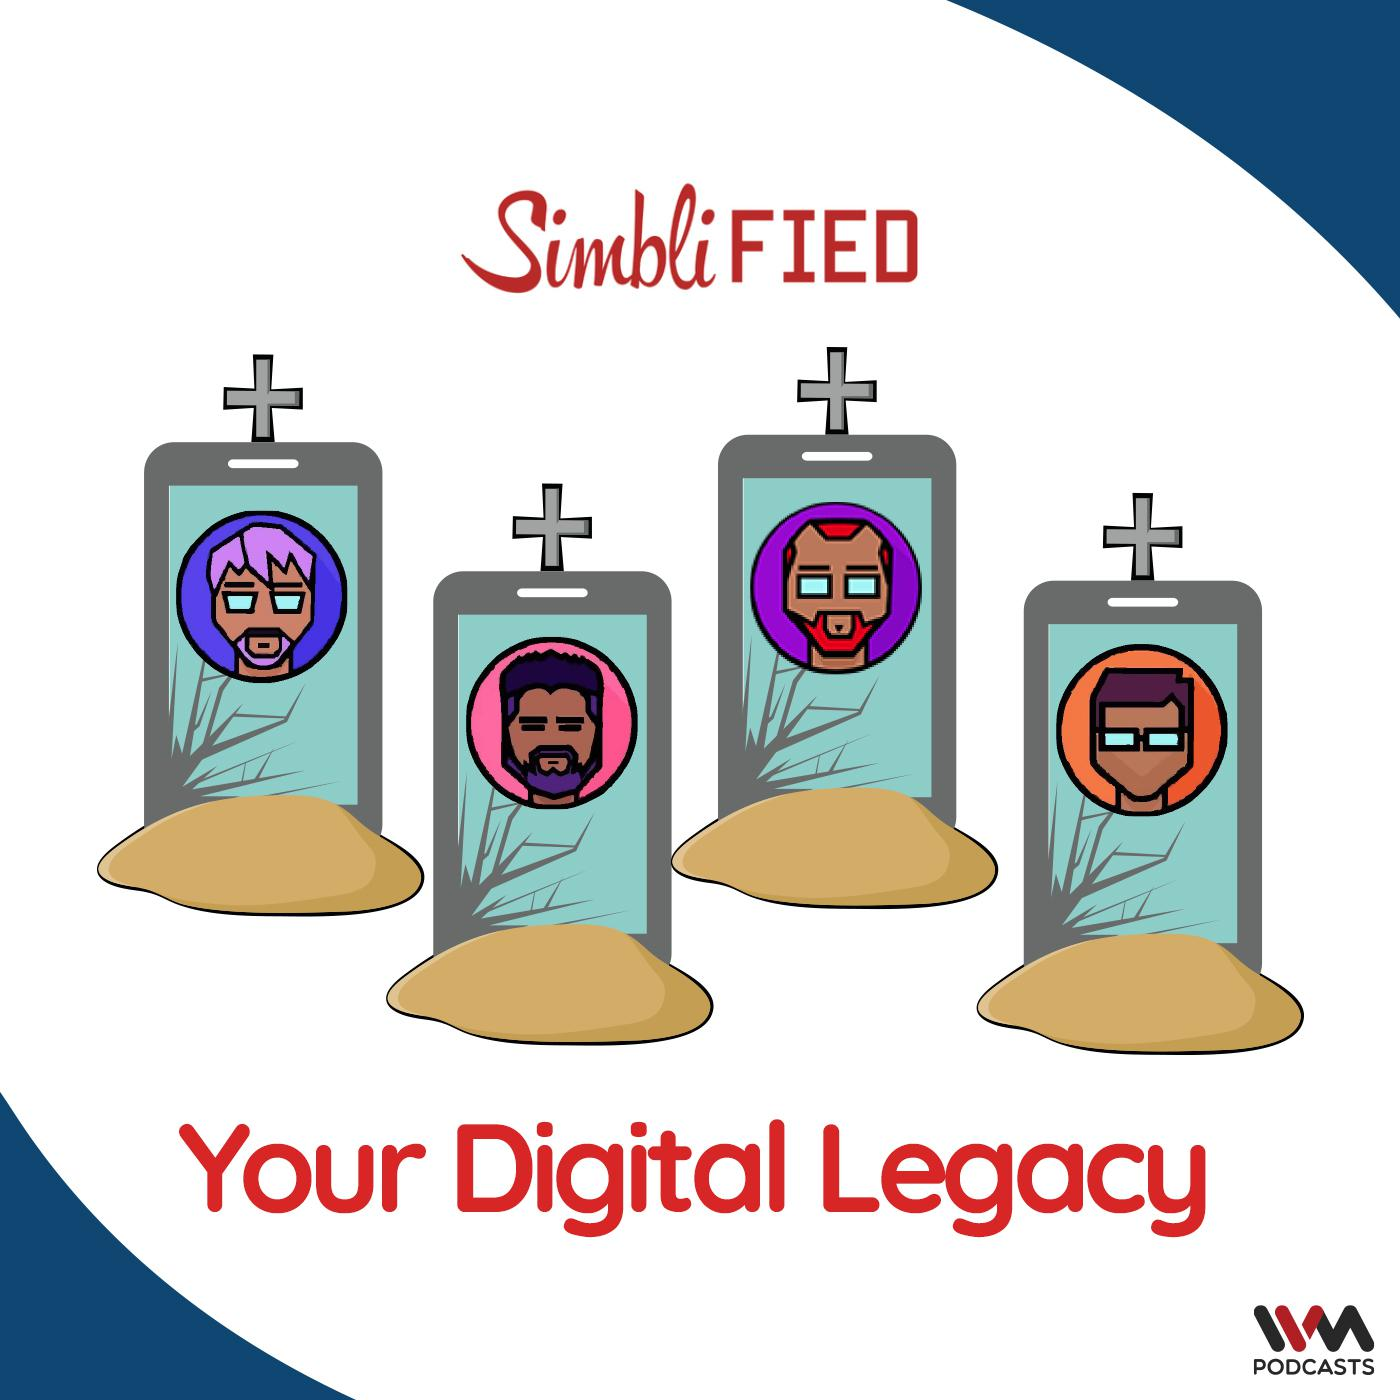 Your Digital Legacy